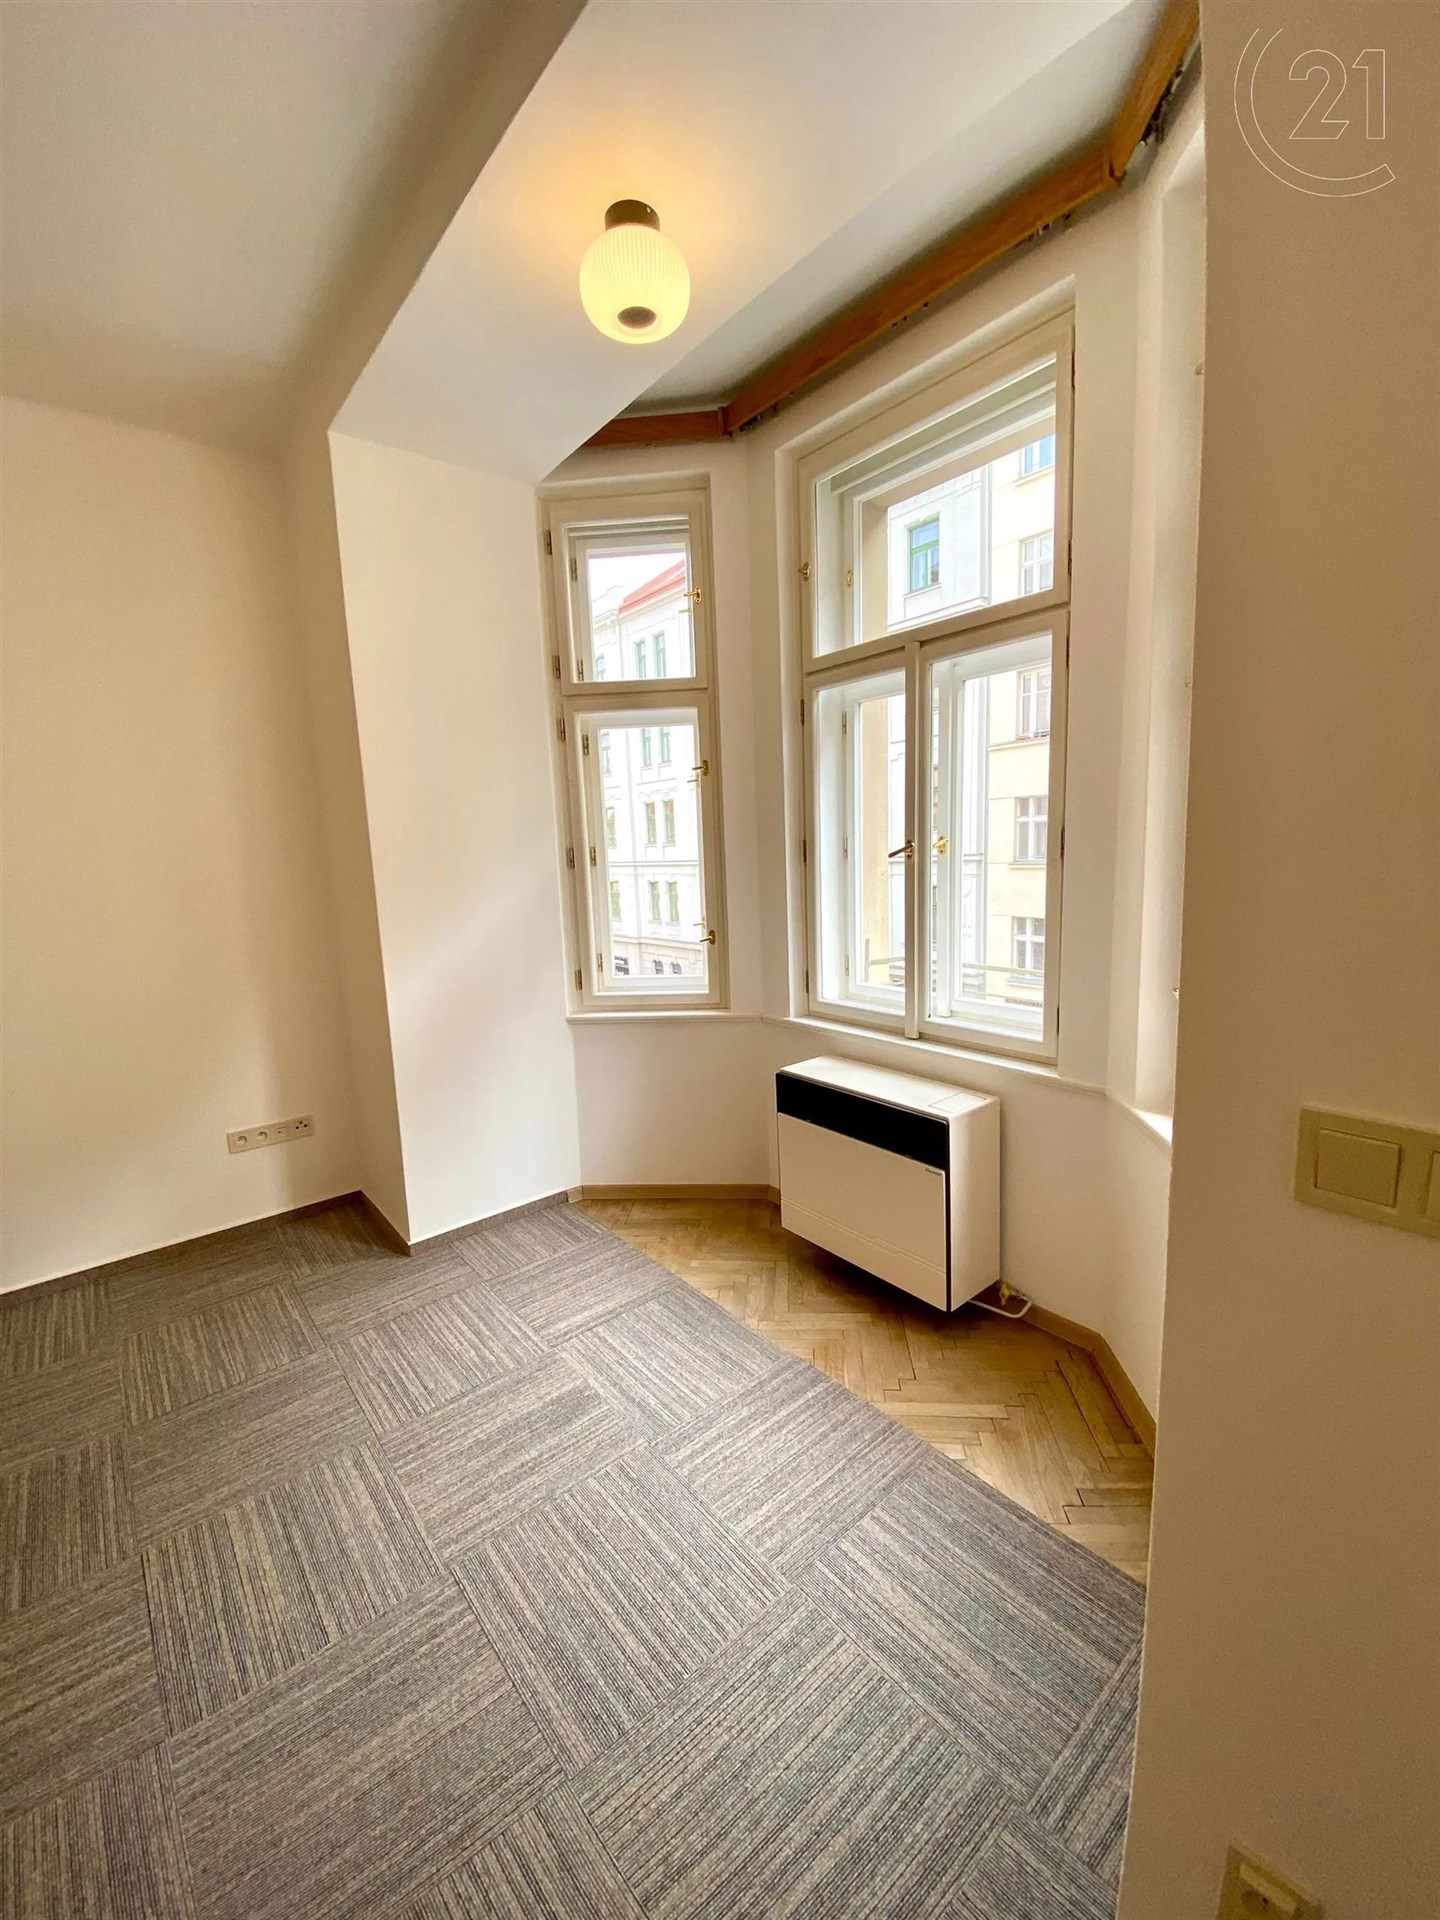 prázdná místnost s přirozené světlo, radiátor, a parketová podlaha